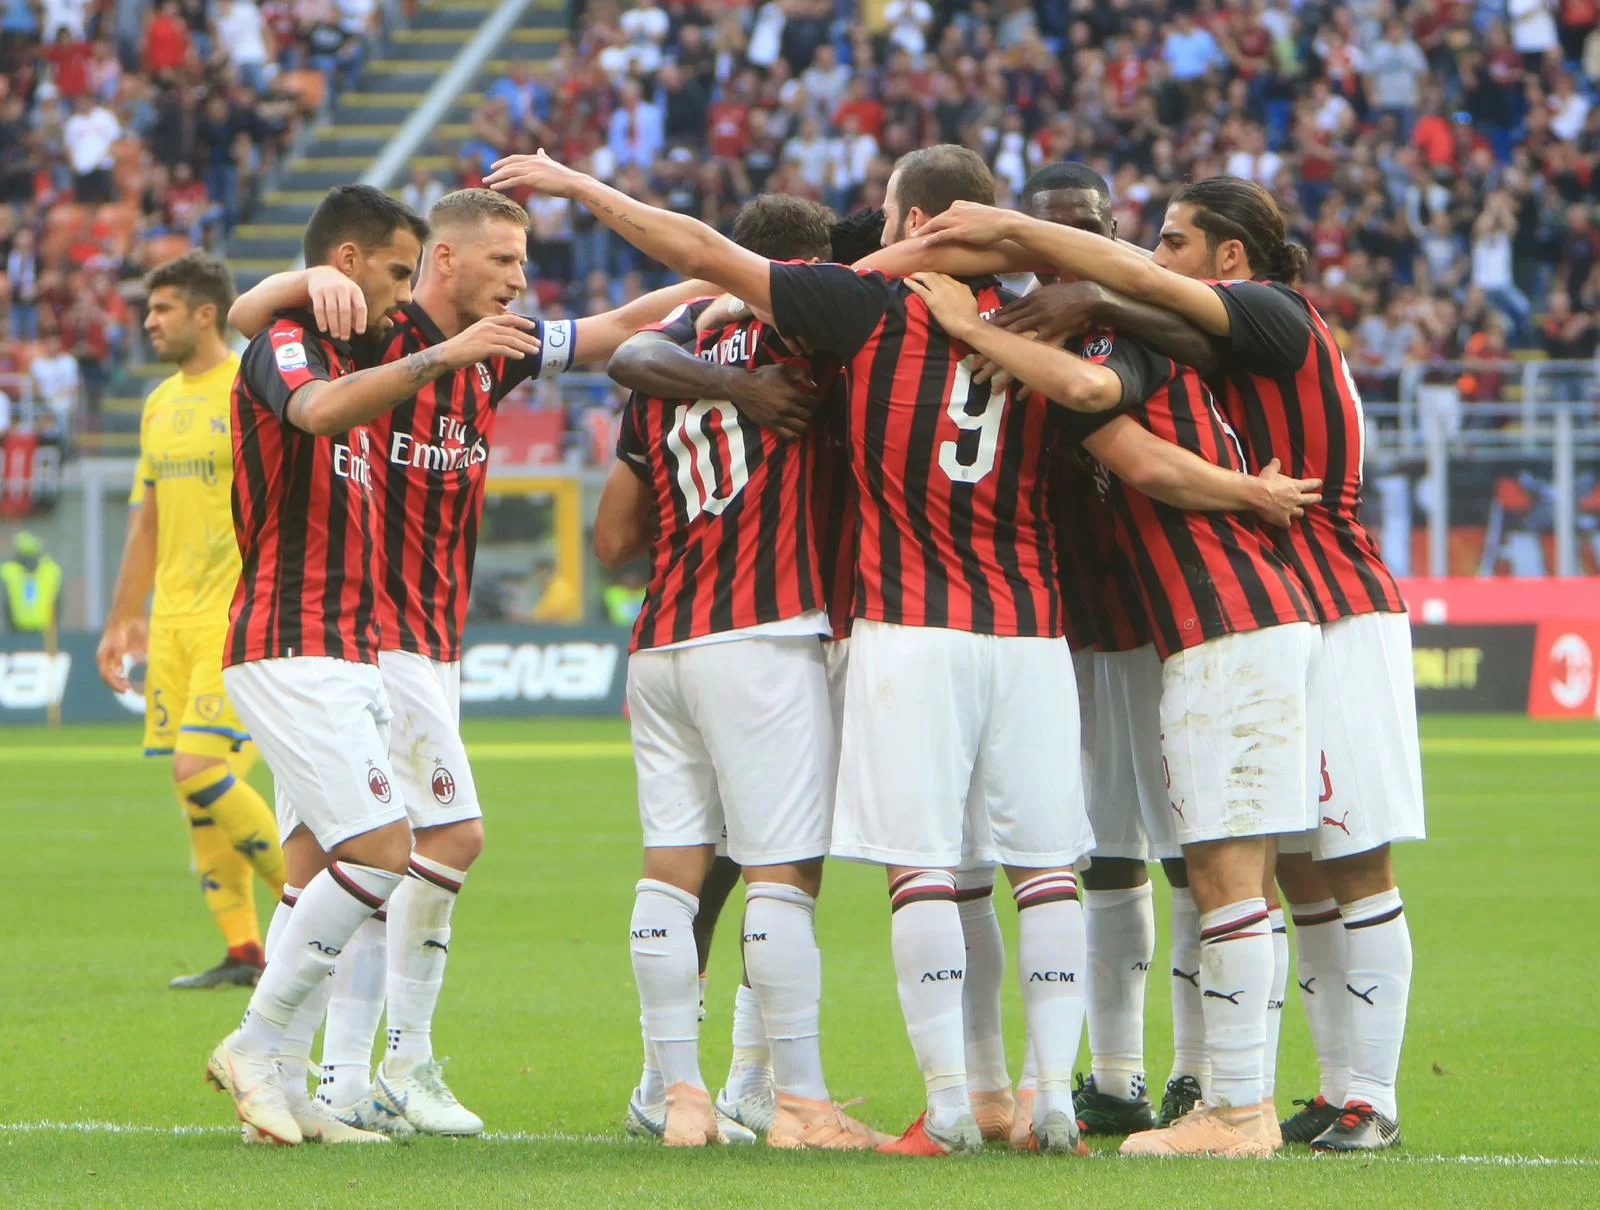 Pipita-Jack e difesa Chievo da incubo: Milan in scioltezza in attesa del derby